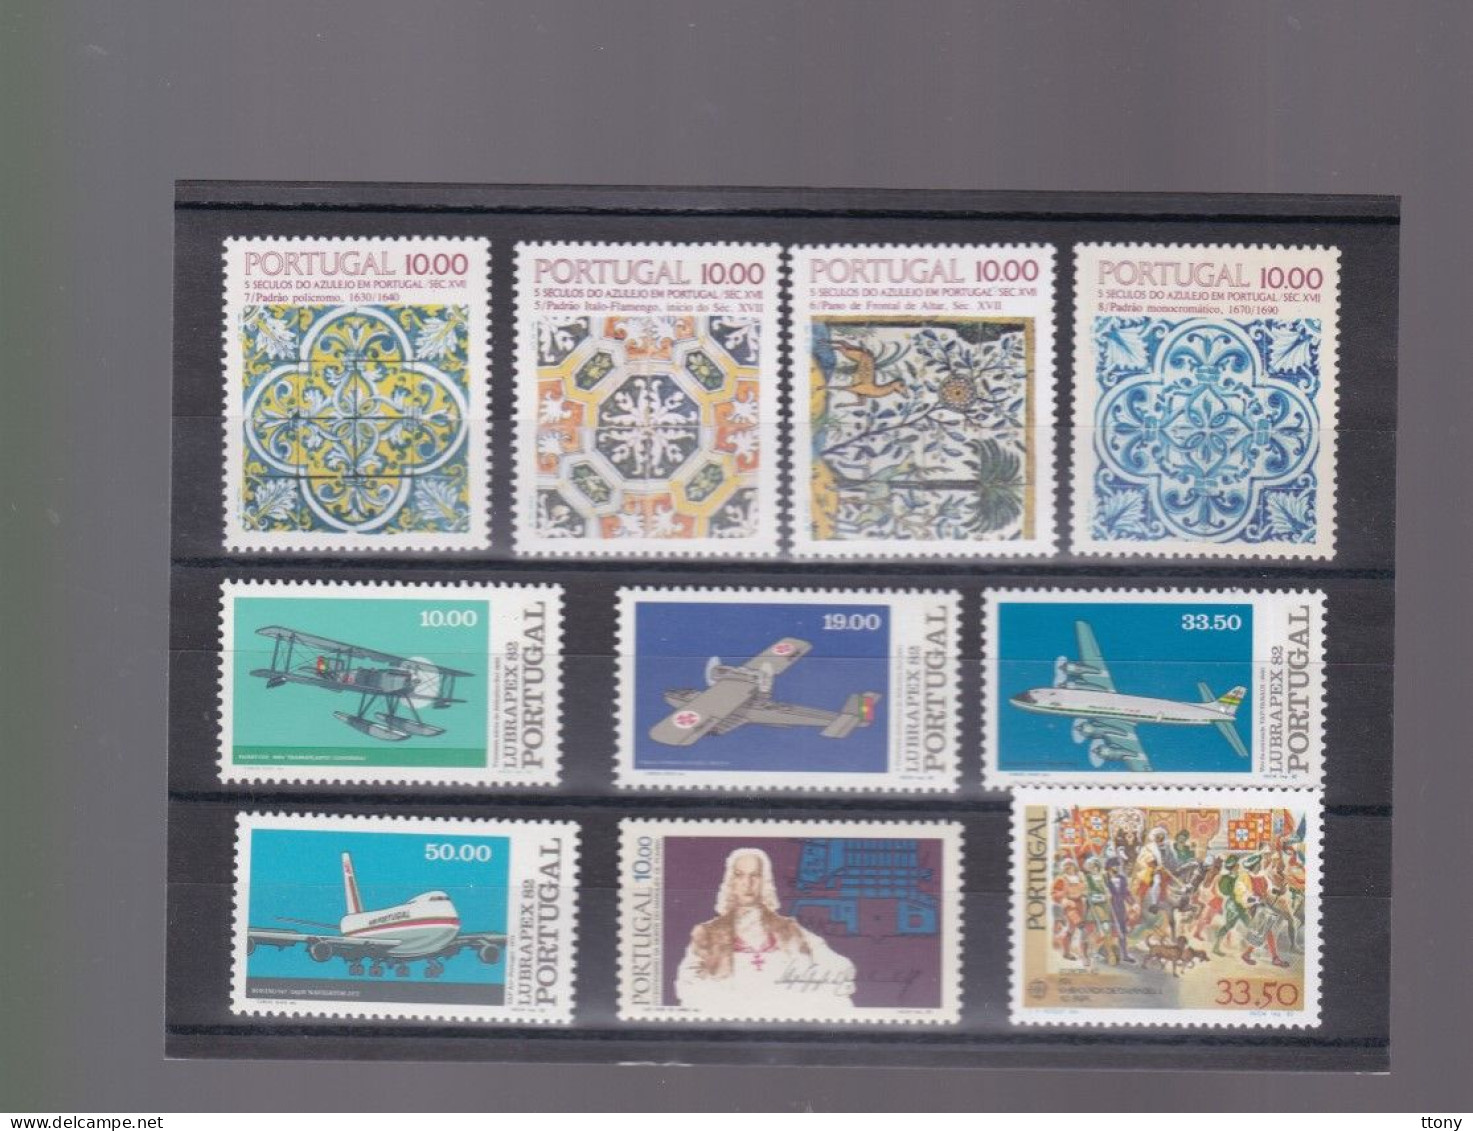 168 timbres Portugal  + blocs et carnets  timbres neufs   différentes années     année complètes  Europa    cote ++++